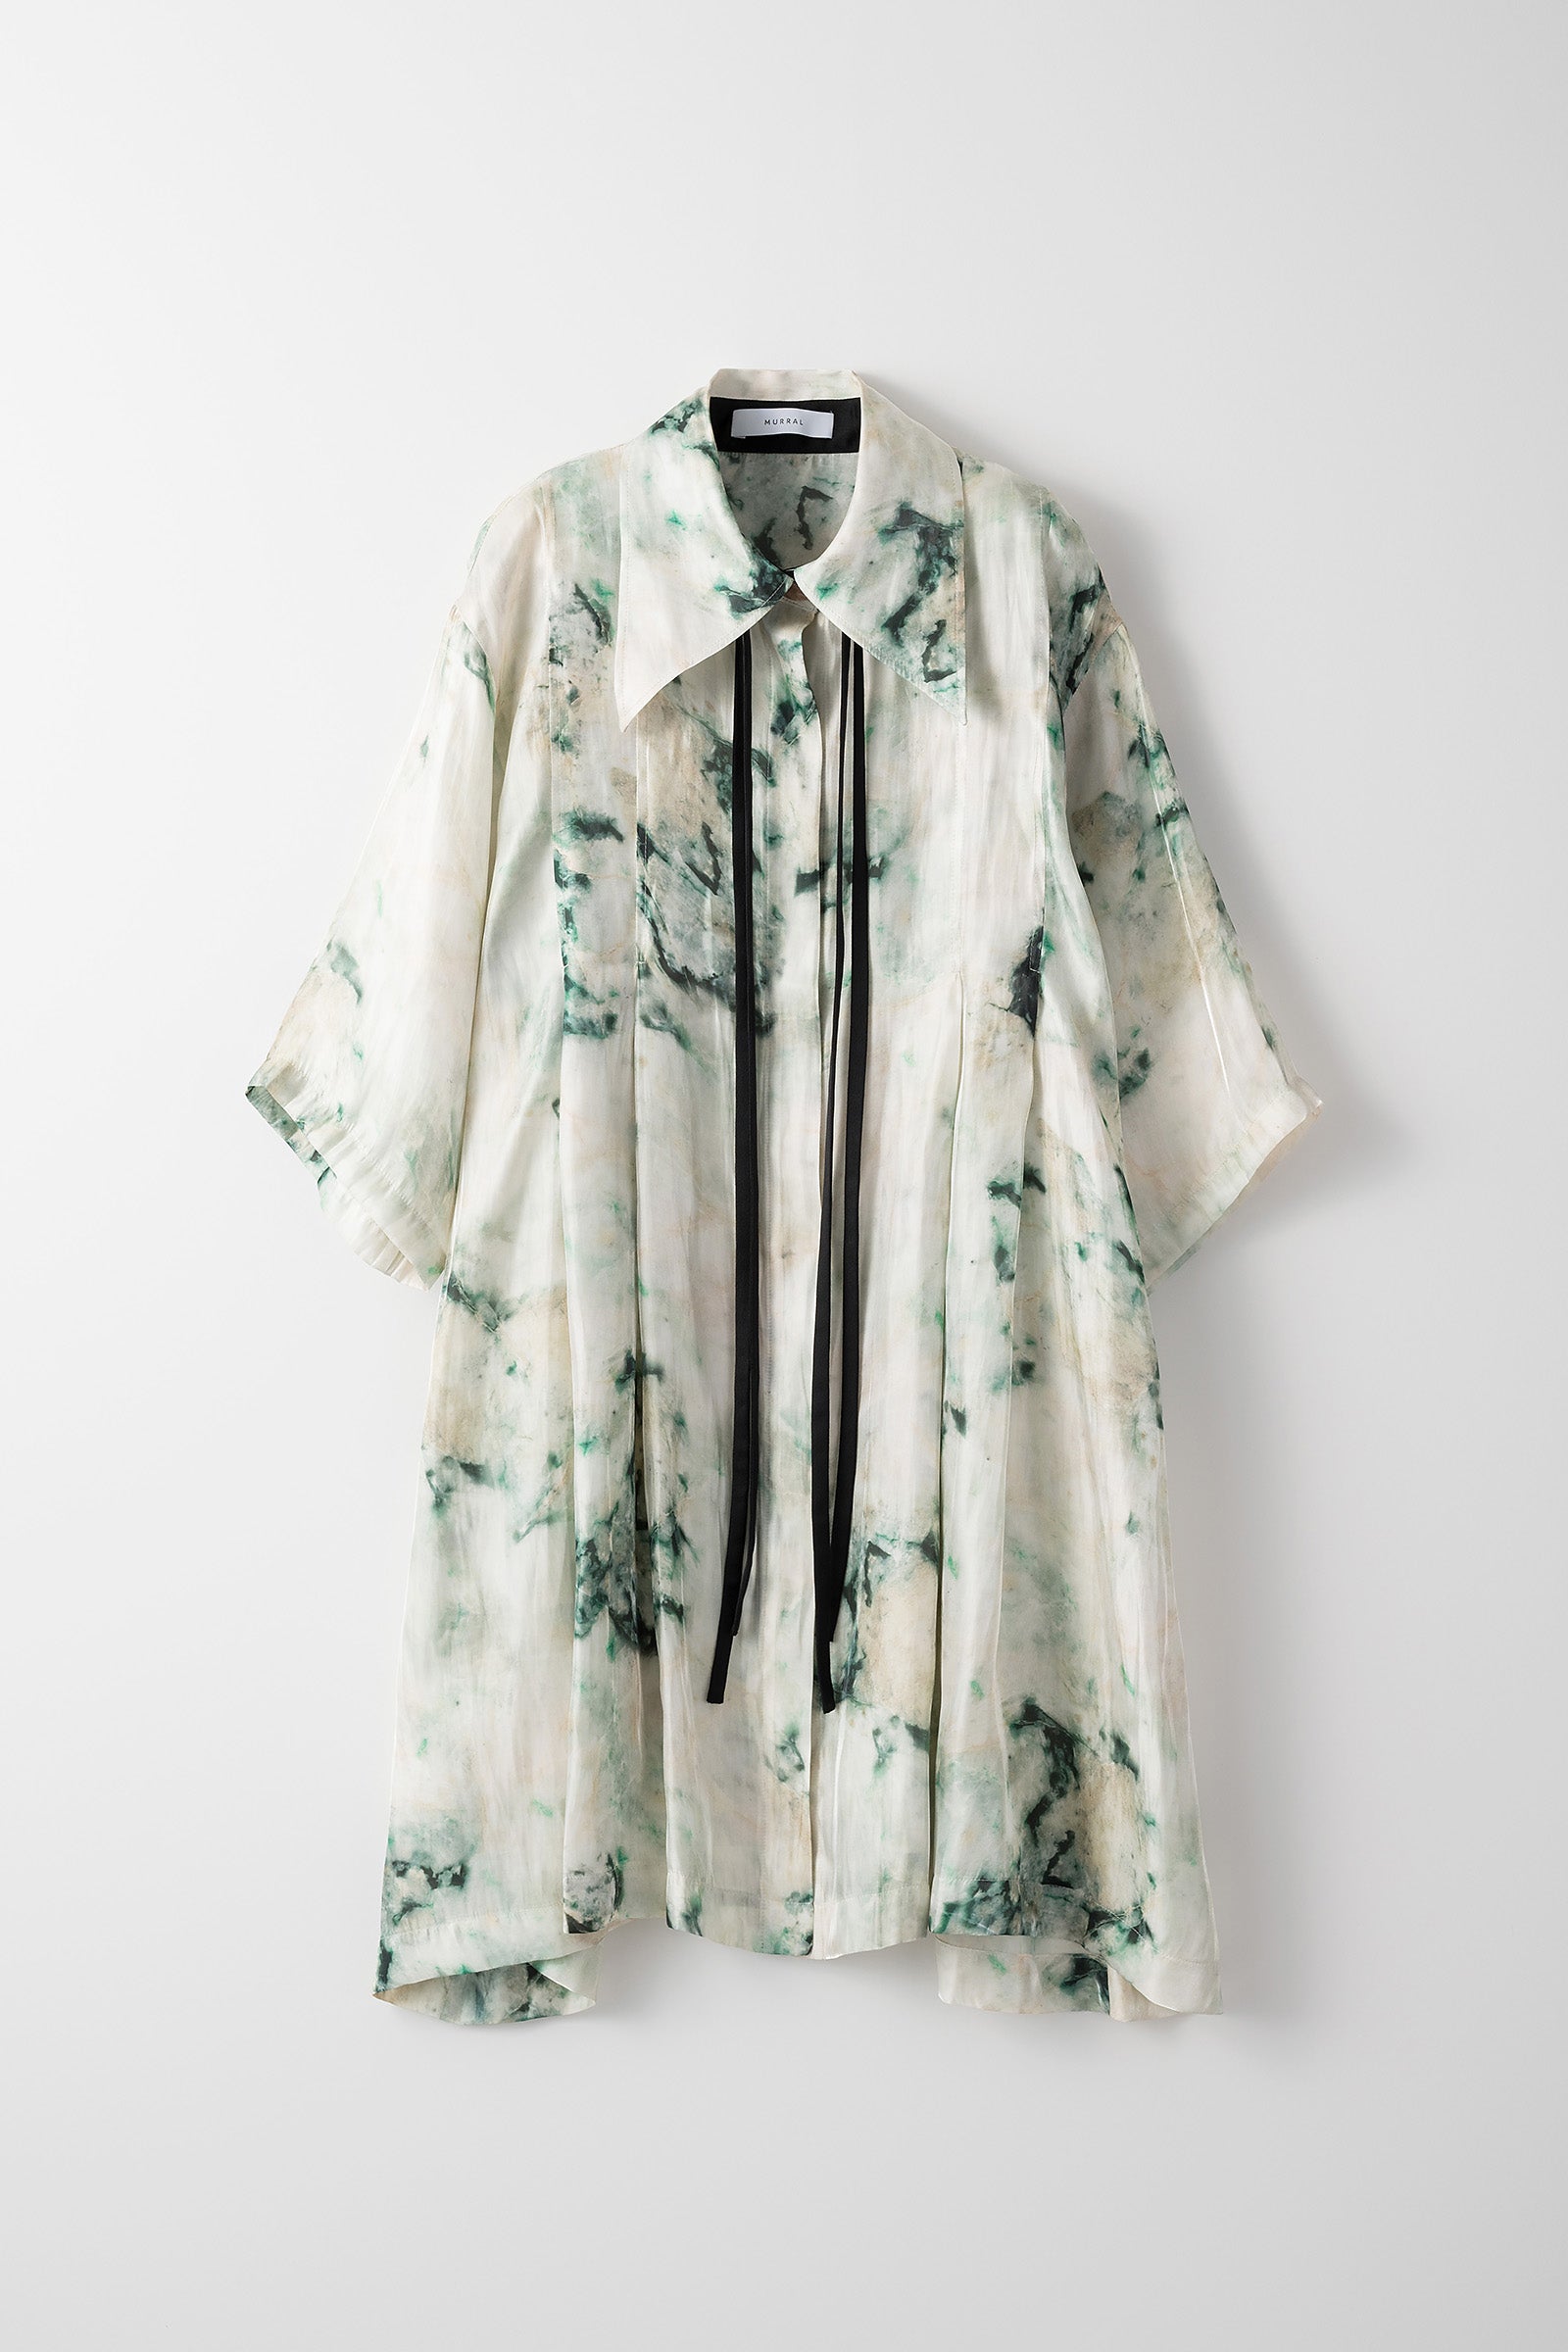 Ore long shirt (Jade) – MURRAL